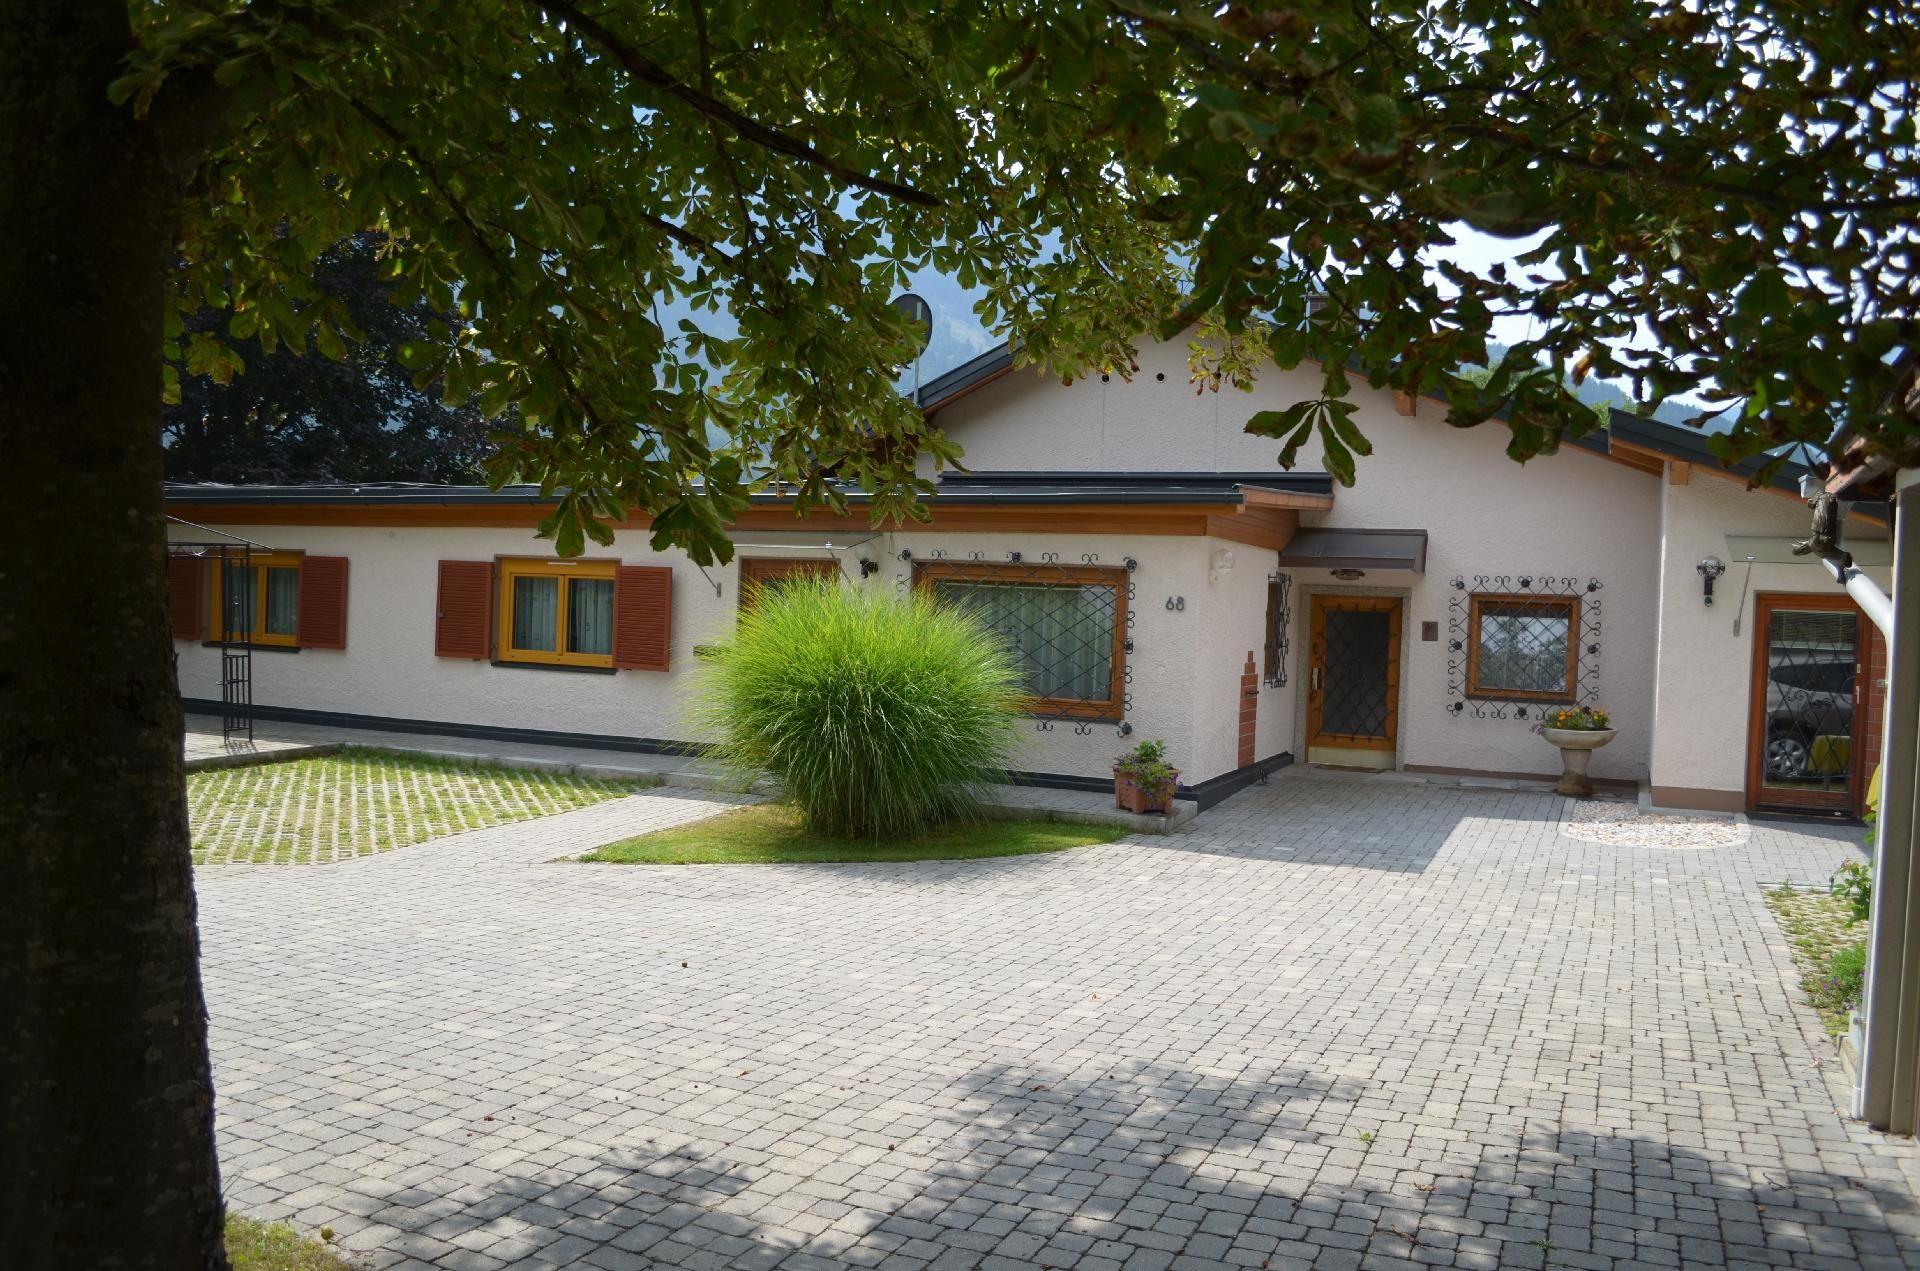 Geräumige Wohnung in Gemeinde Flattach mit Gr Ferienhaus  Flattach